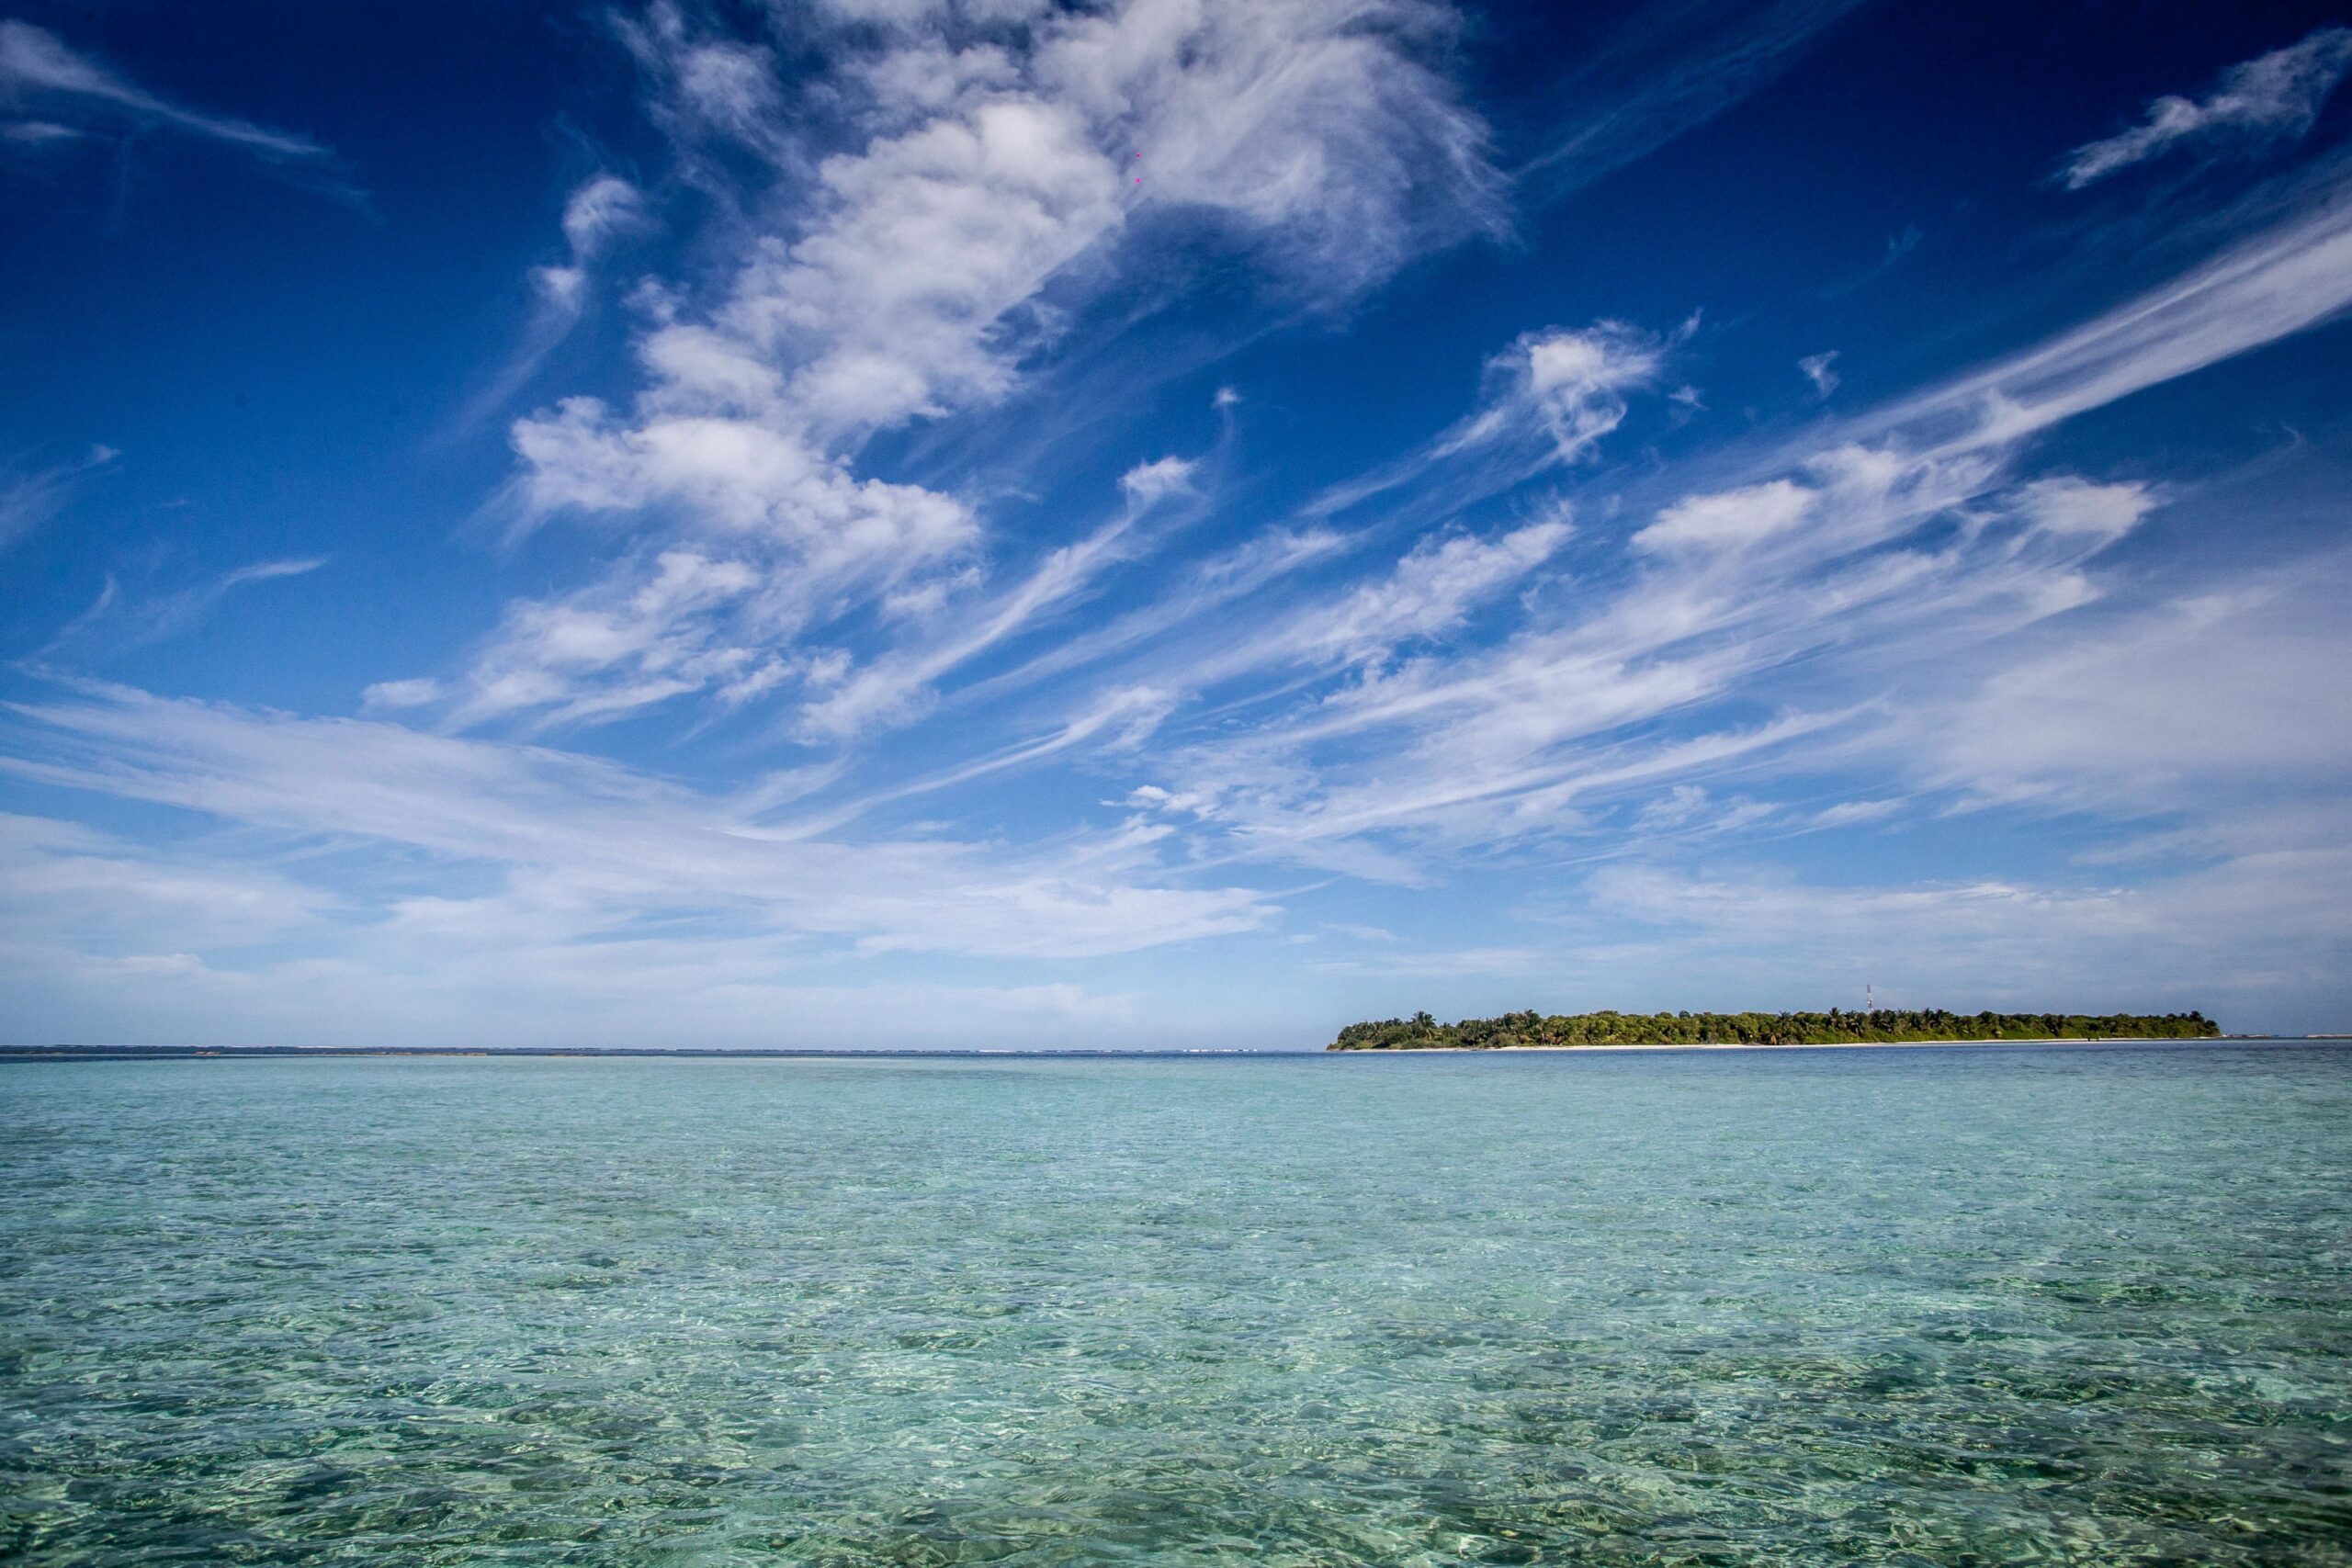 undp-maldives-2015_ocean_clouds_02_2